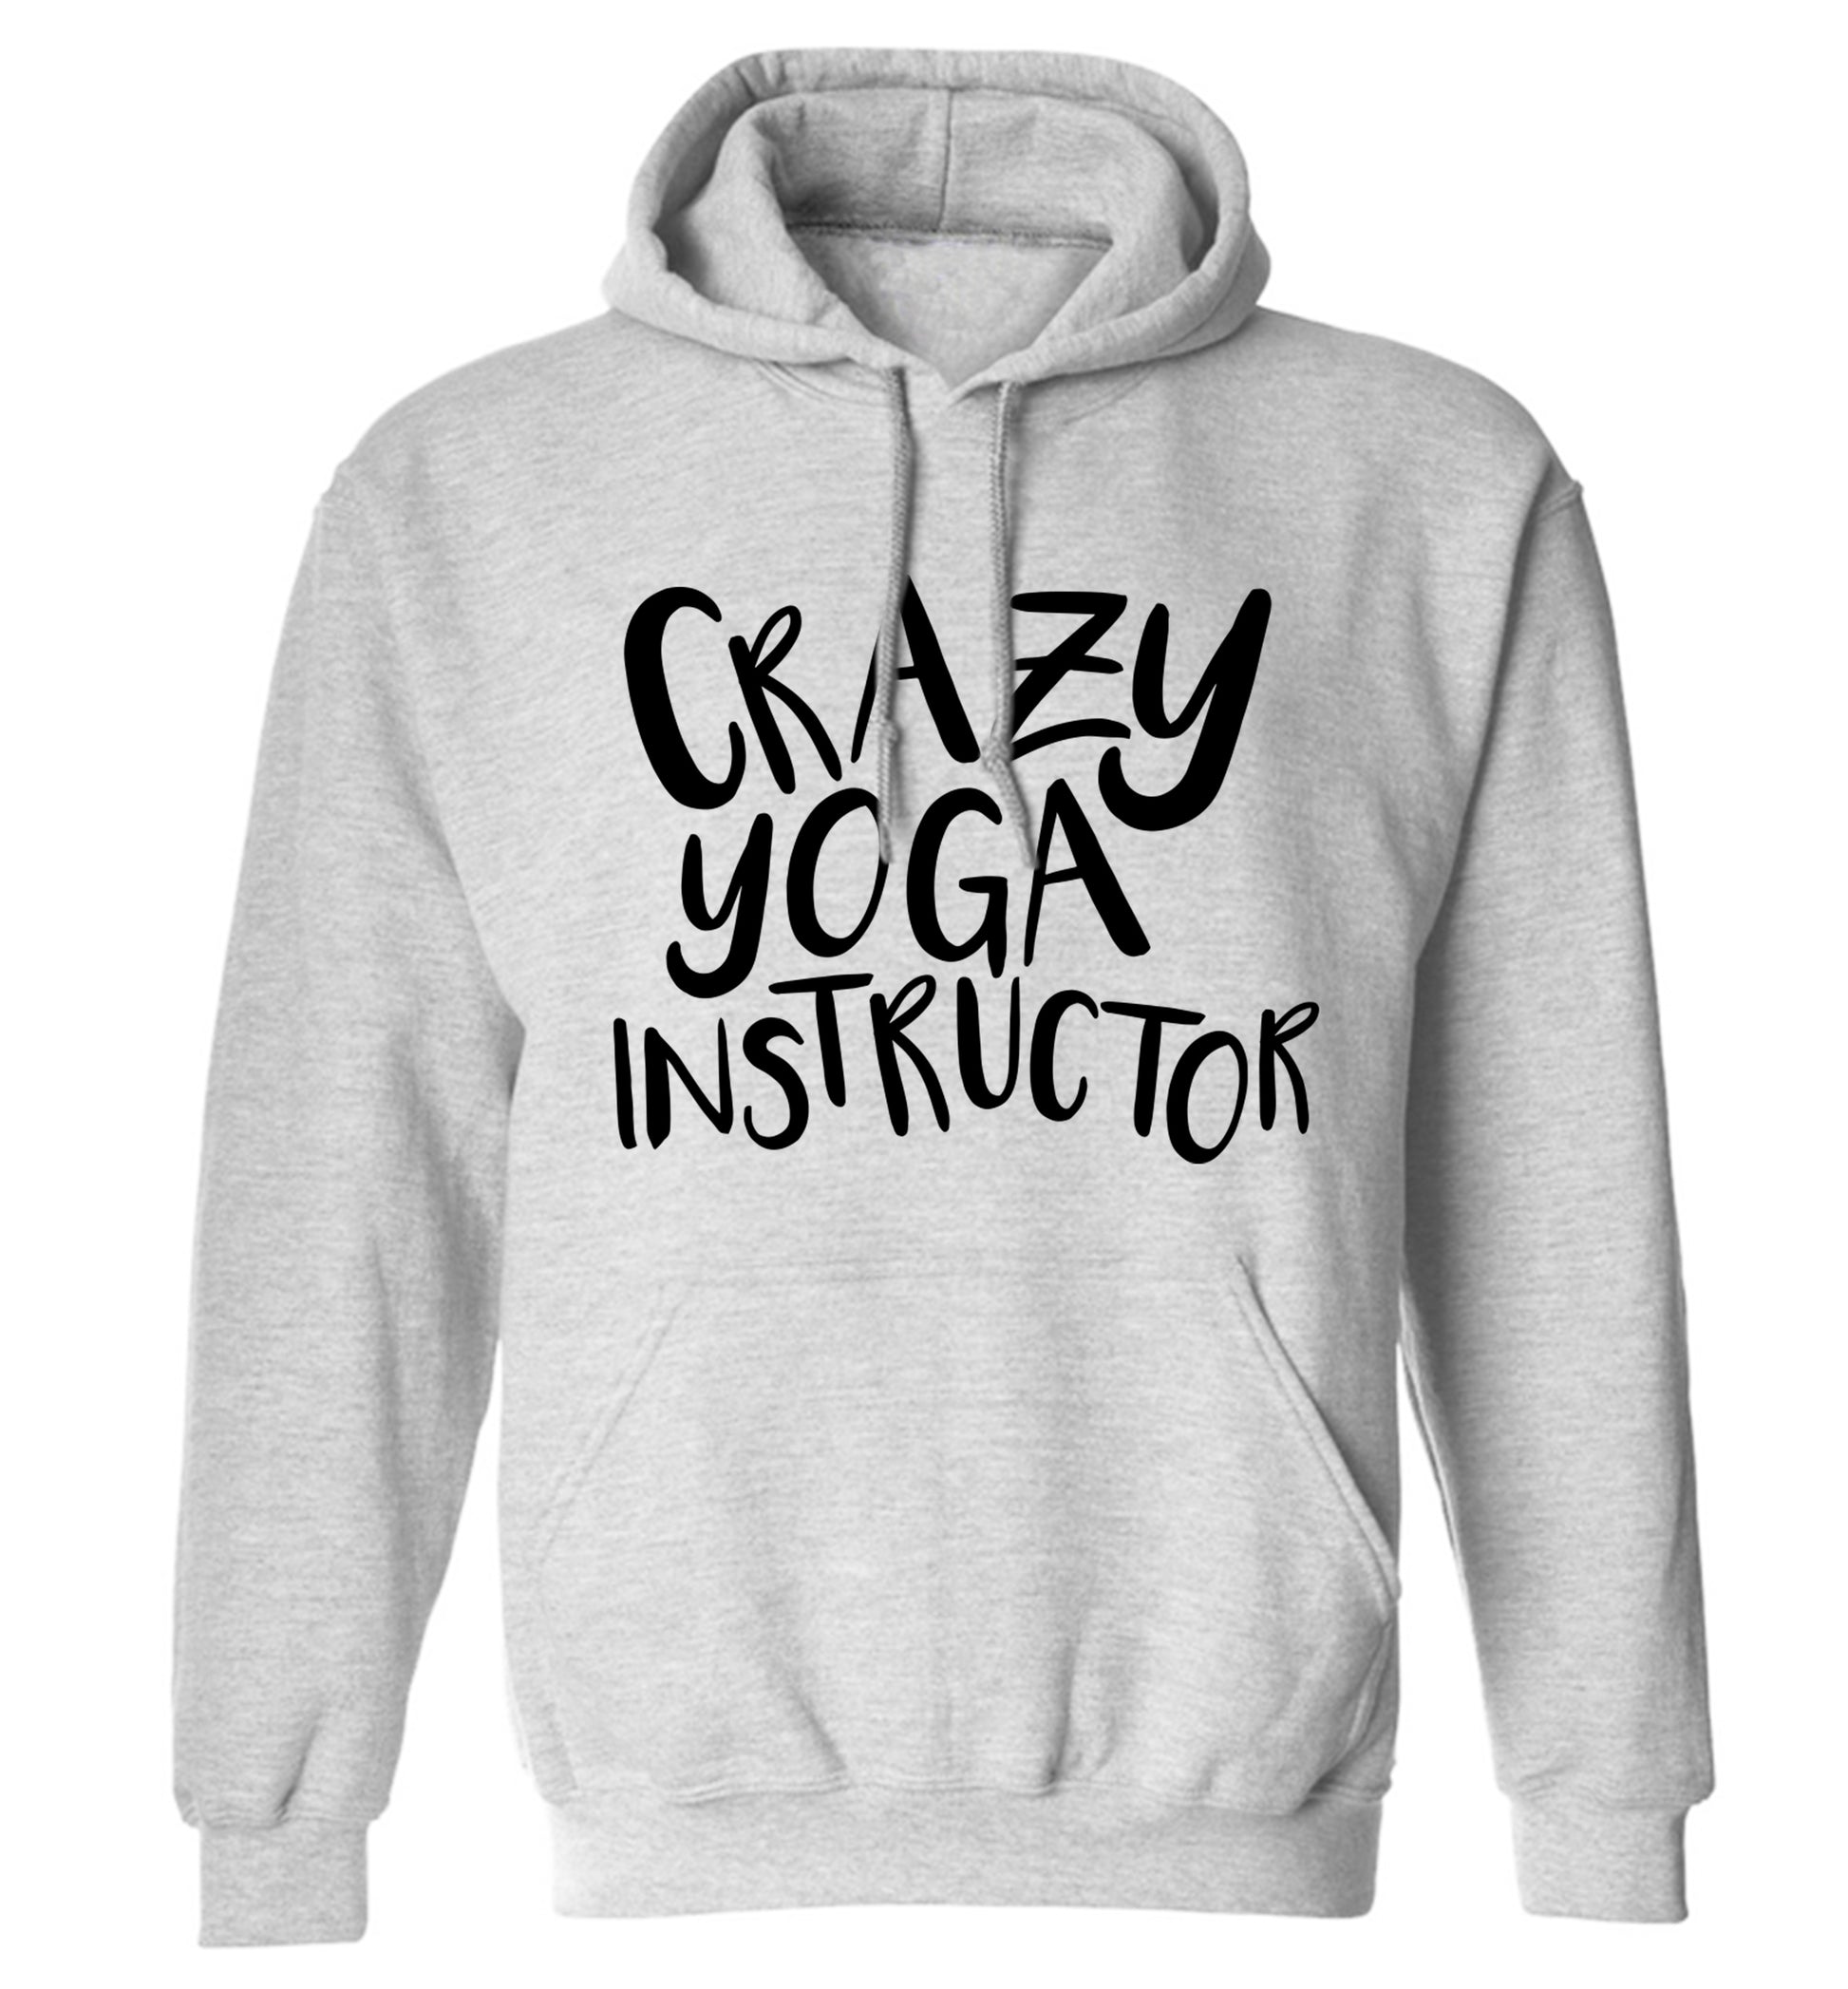 Crazy yoga instructor adults unisex grey hoodie 2XL